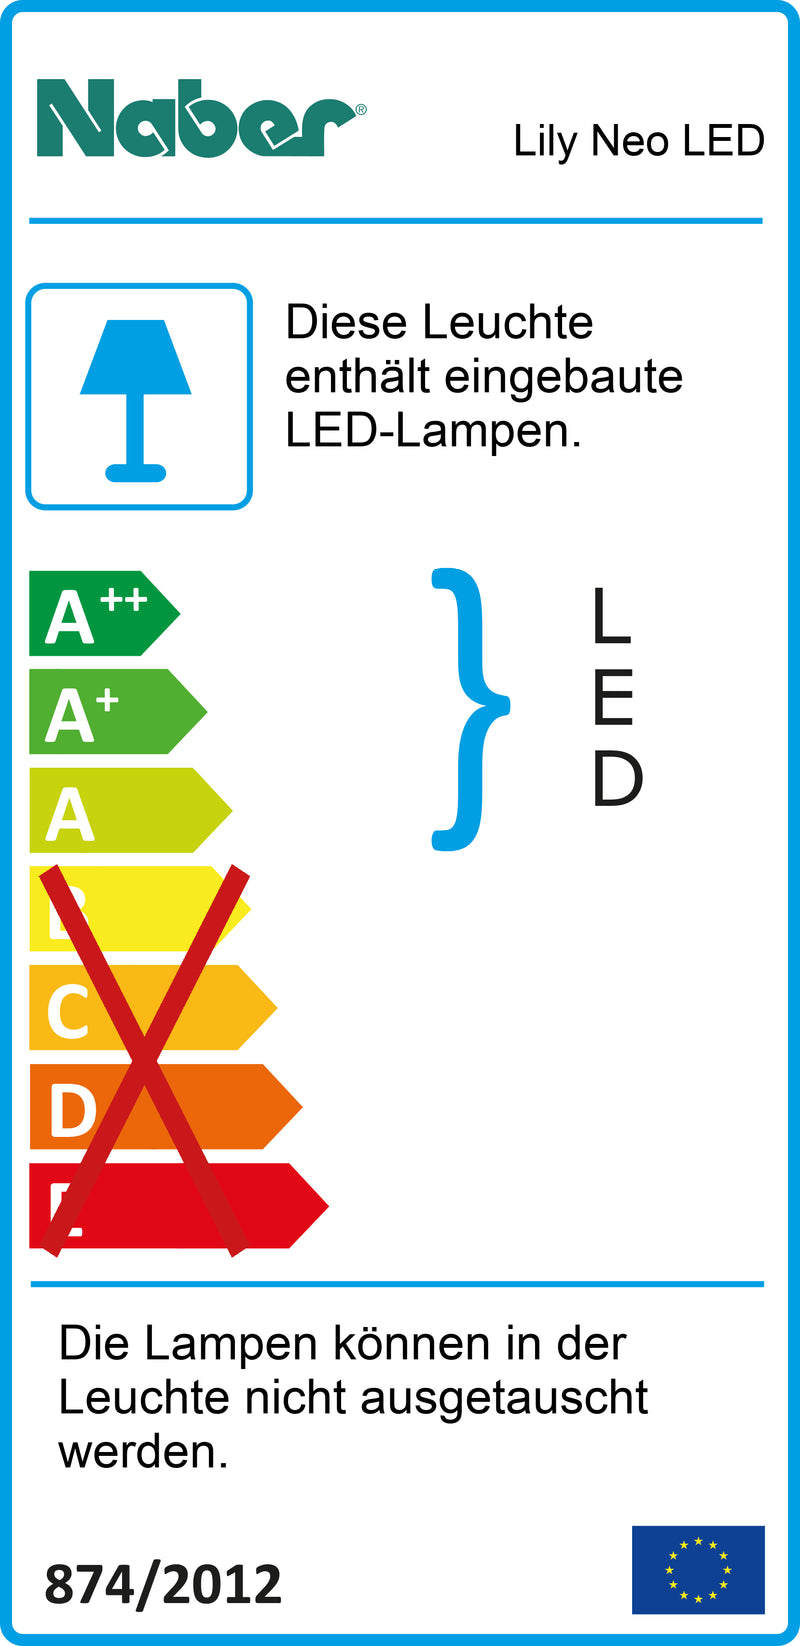 E-Label zu Zeichnung zu Lily Neo LED als Variante L 555 mm, 10 W, edelstahlfarbig von Naber GmbH in der Kategorie Lichttechnik in Österreich auf conceptshop.at